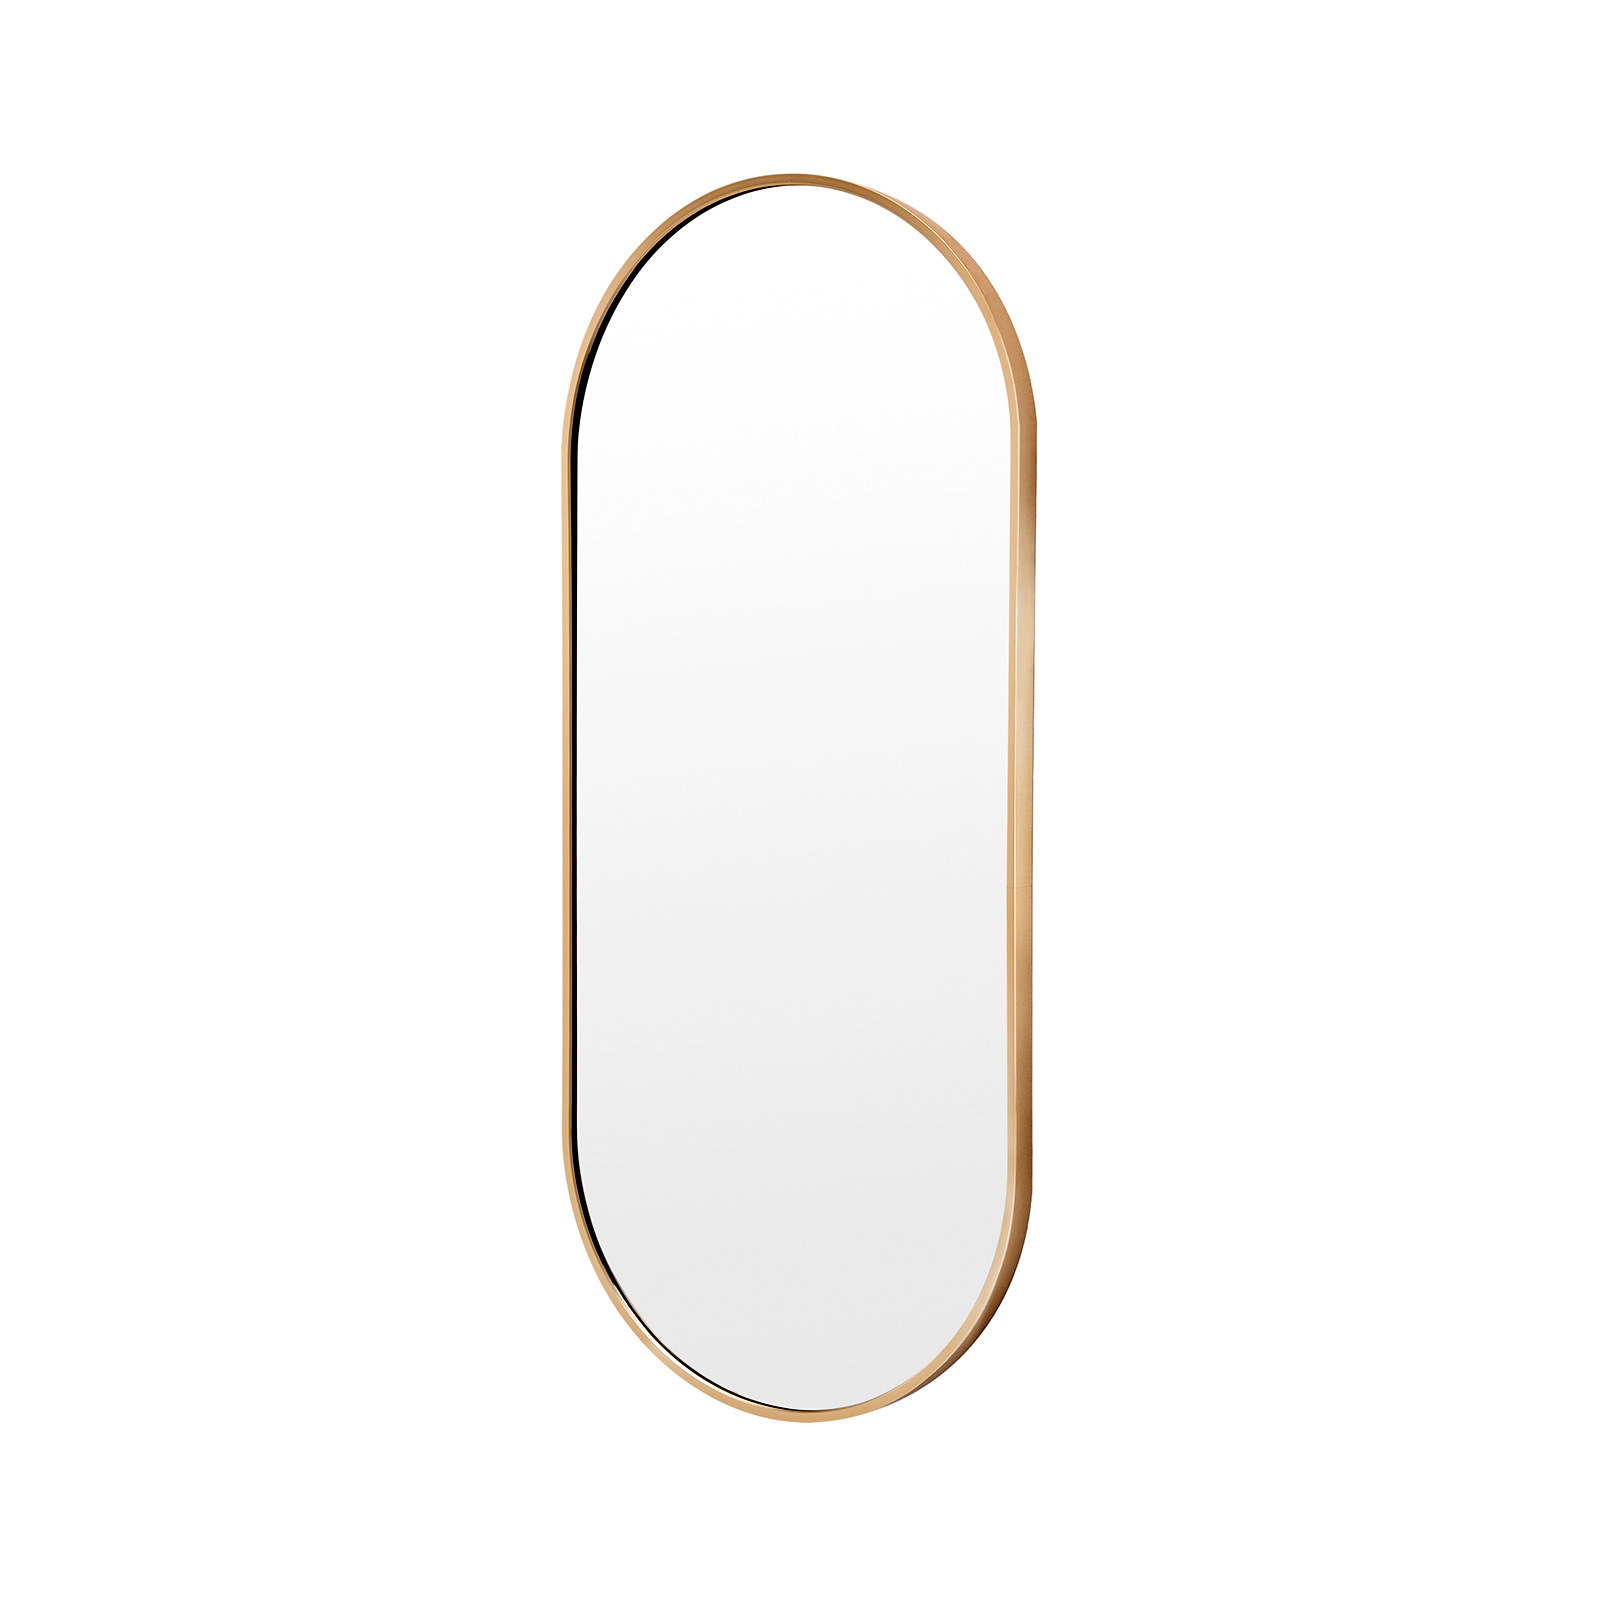 45 x 100cm Wall Mirror Oval Bathroom - GOLD